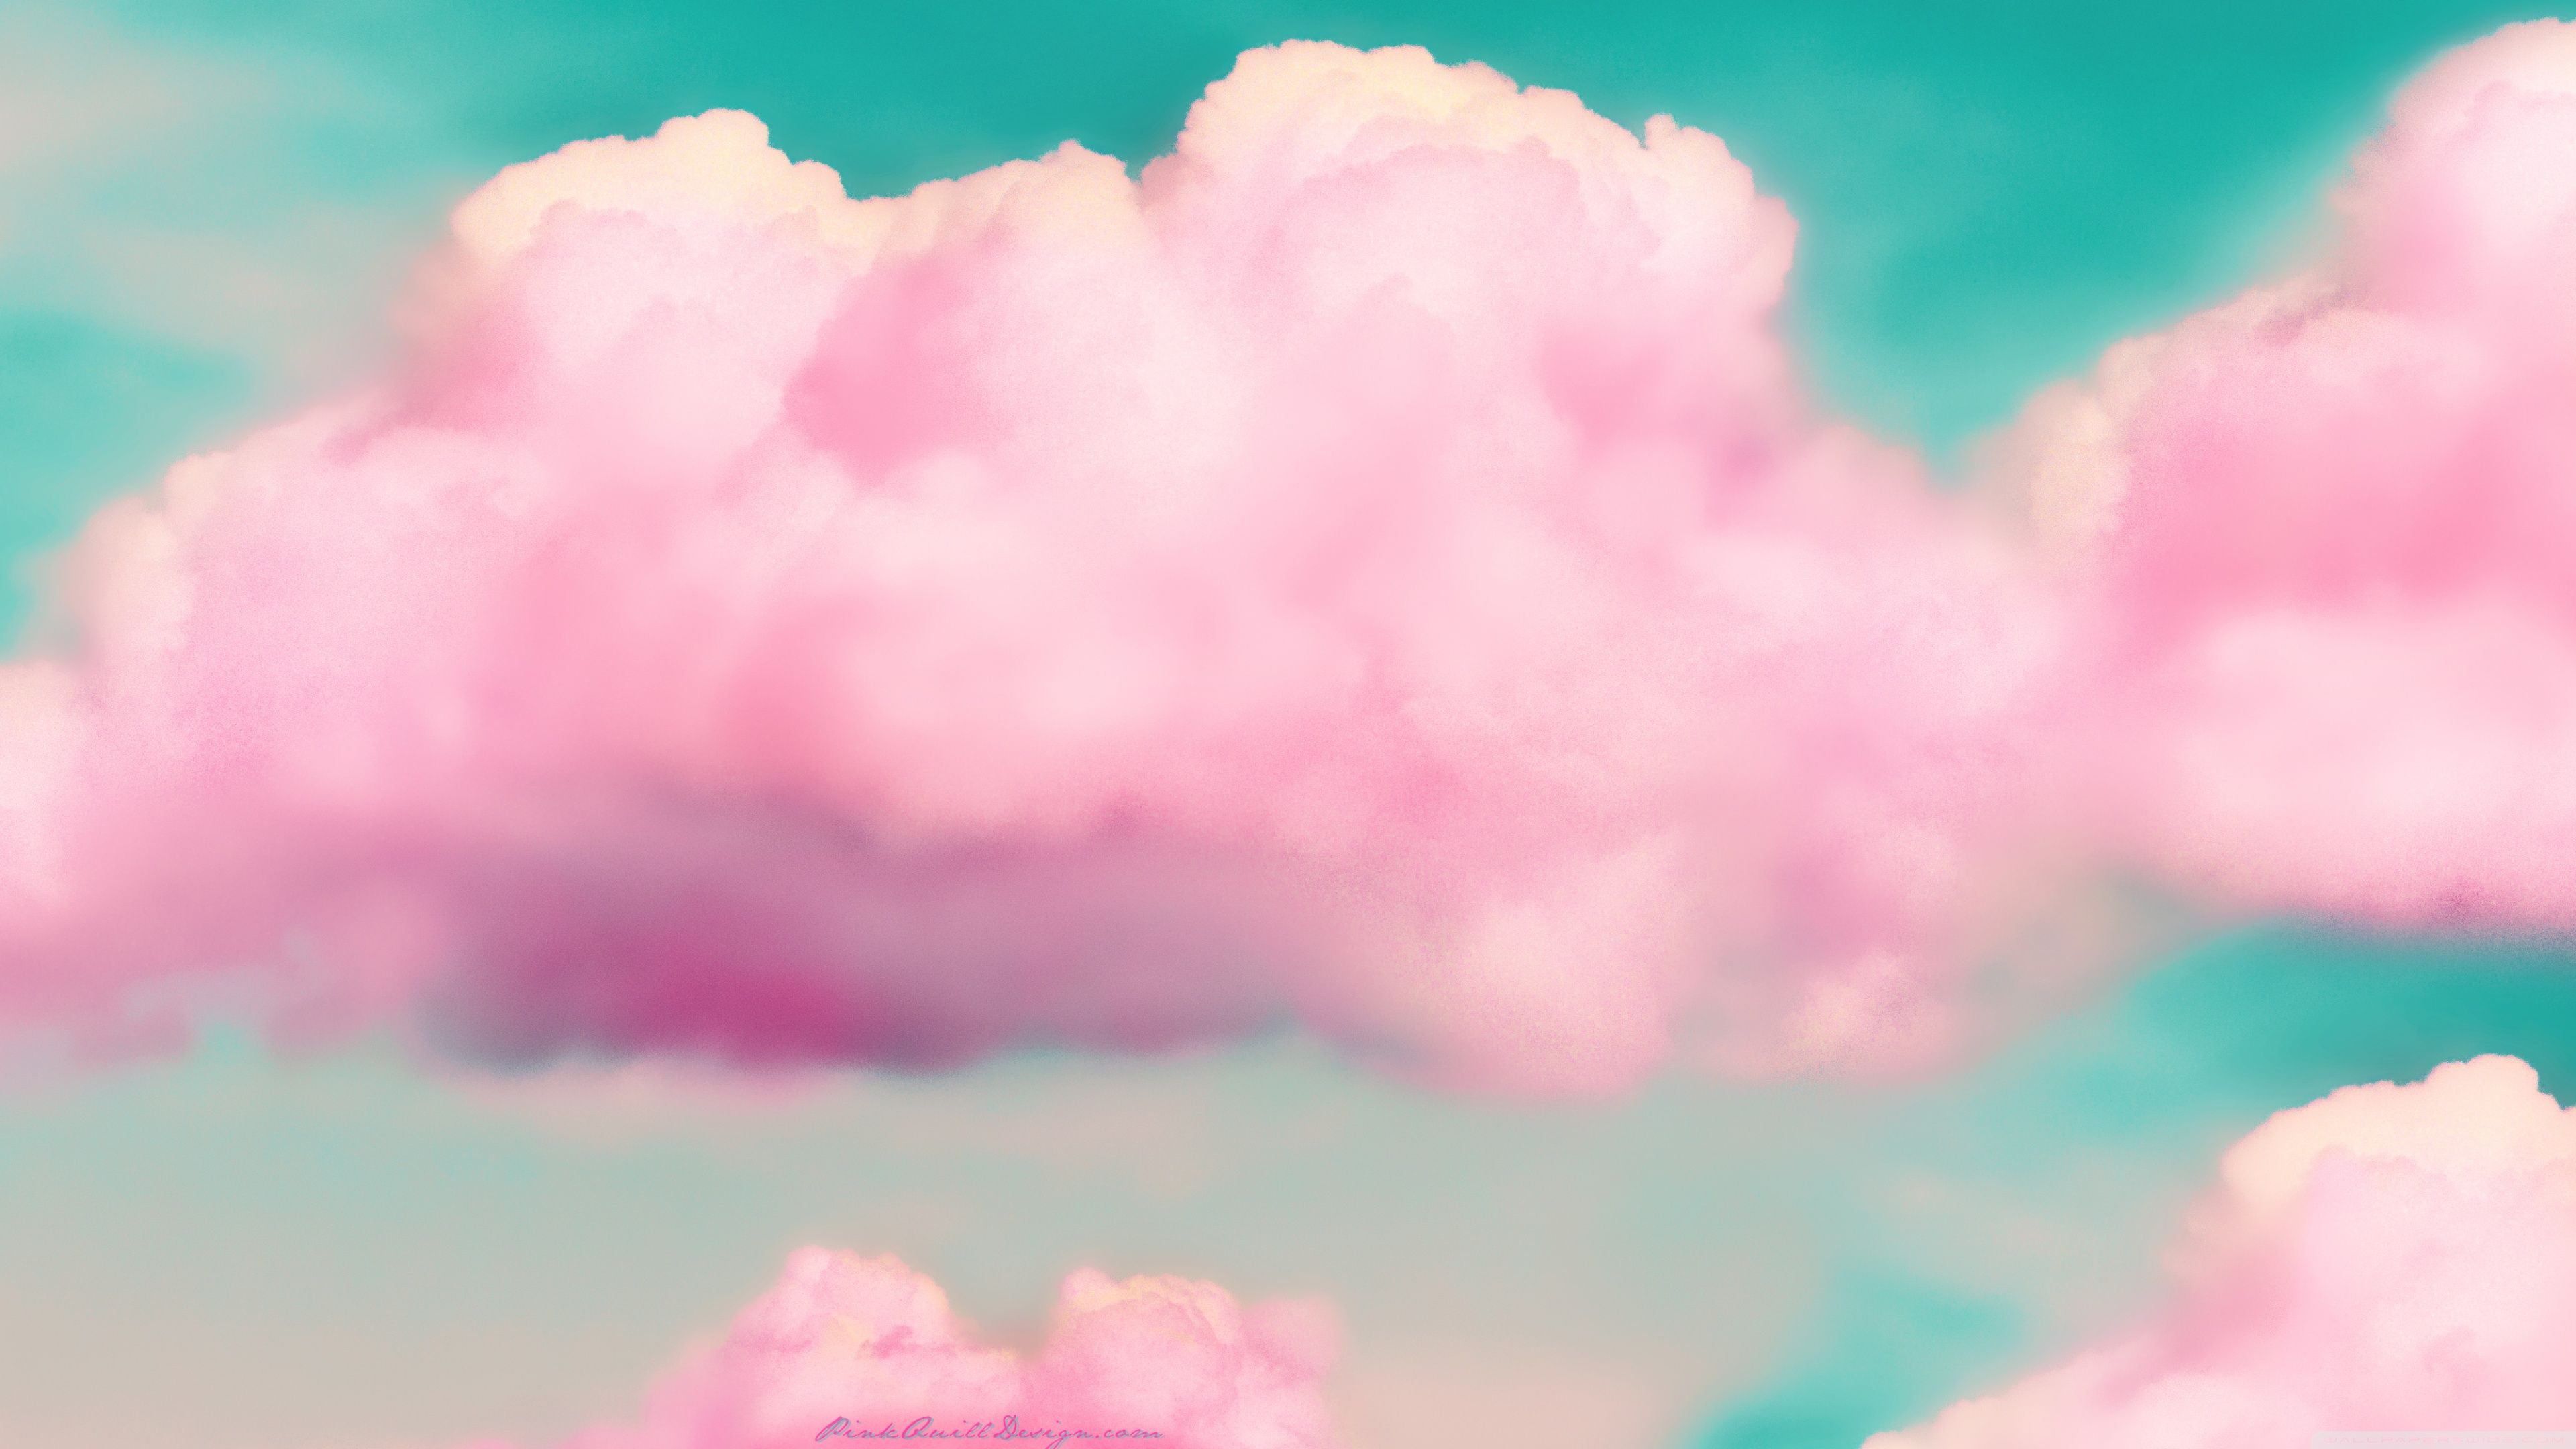 Hình nền máy tính tumblr màu hồng mây sẽ khiến công việc hay giải trí của bạn trở nên thú vị hơn. Màu hồng với những hình ảnh đám mây tuyệt đẹp sẽ mang lại cho bạn những cảm giác tươi mới và tích cực, khiến cho công việc của bạn trở nên dễ chịu hơn bao giờ hết.